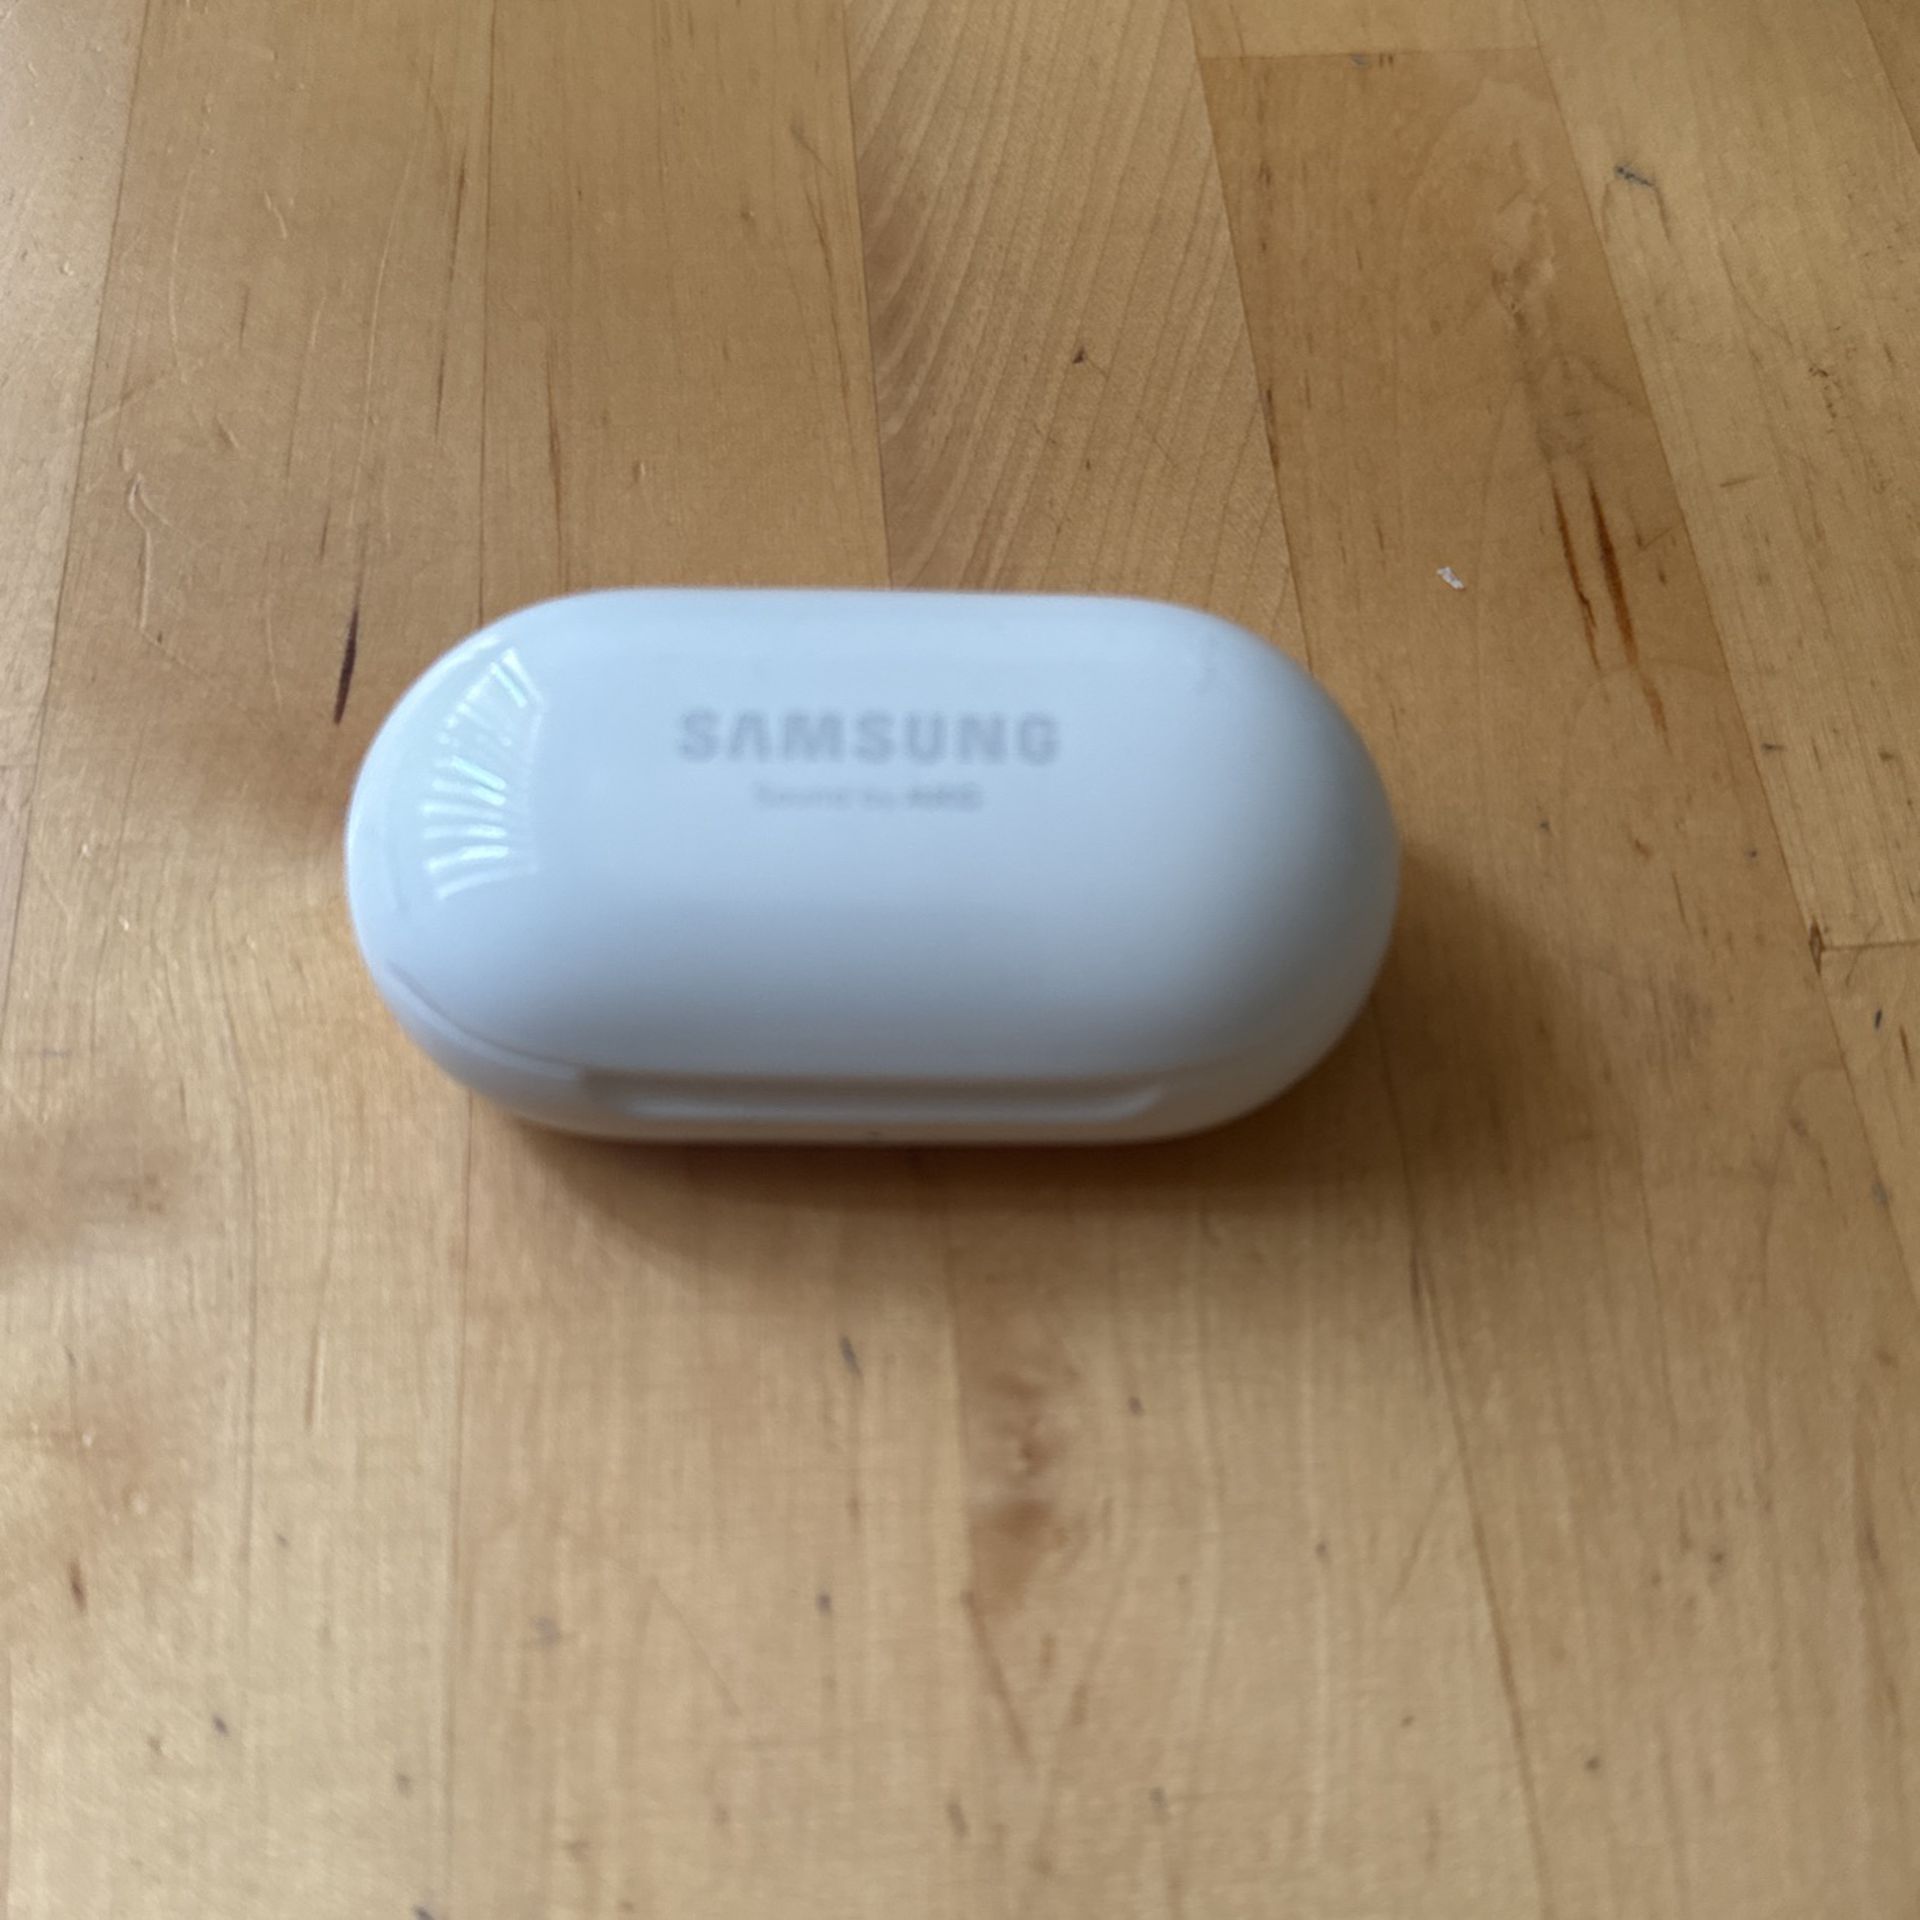 Samsung Pods